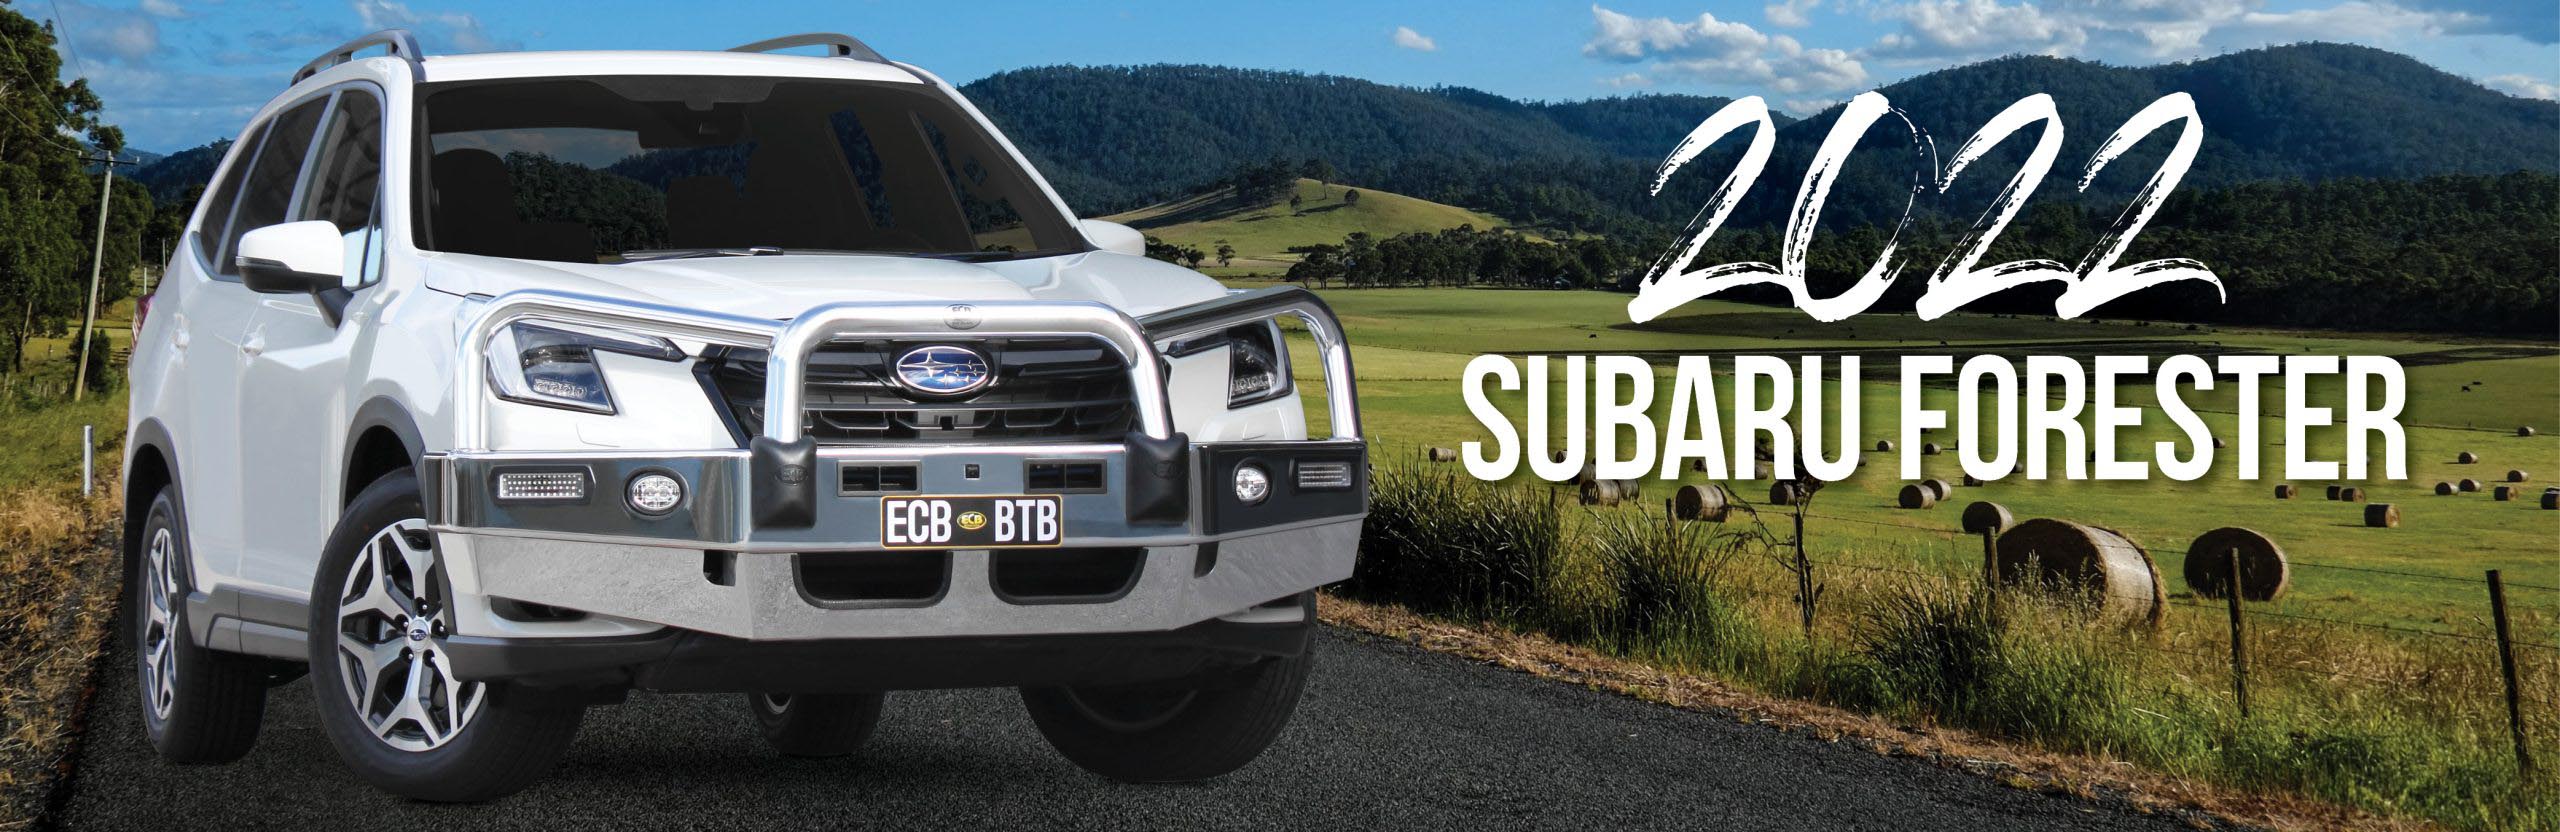 Subaru Forester Bullbars